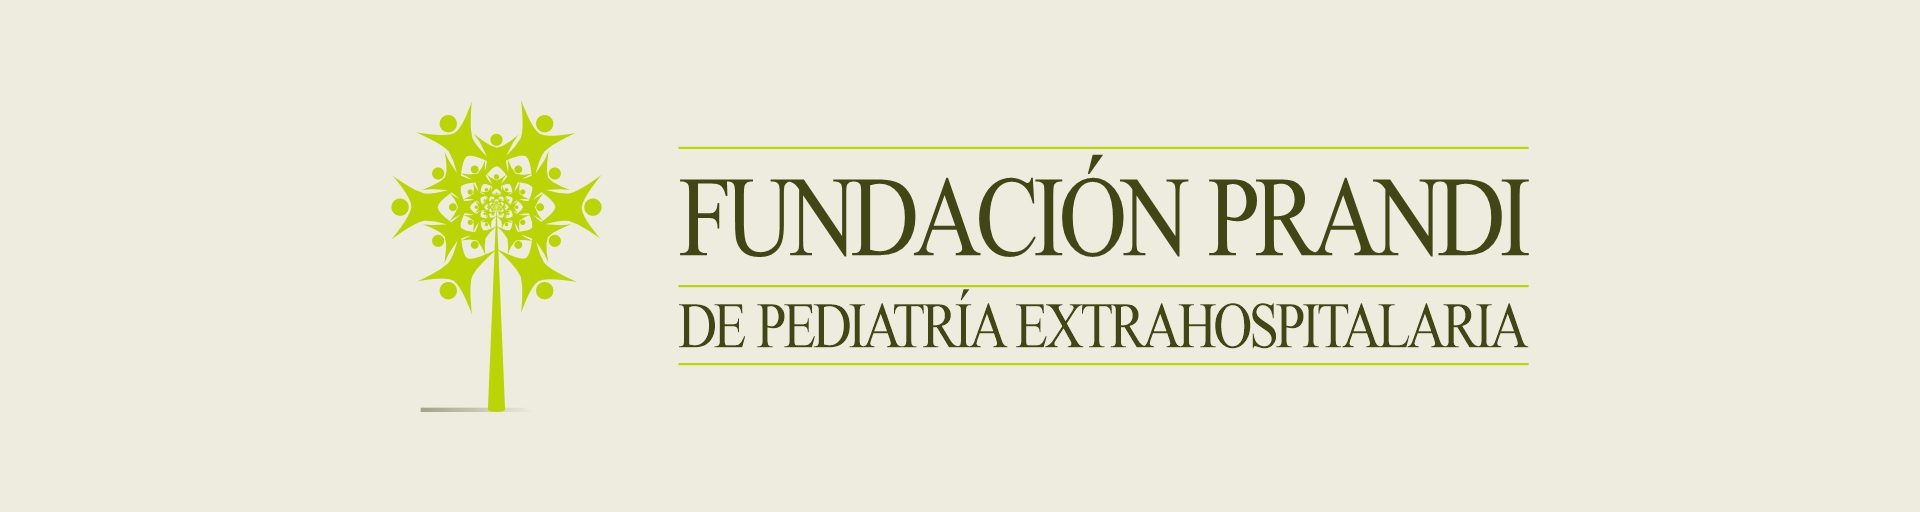 Fundación Prandi